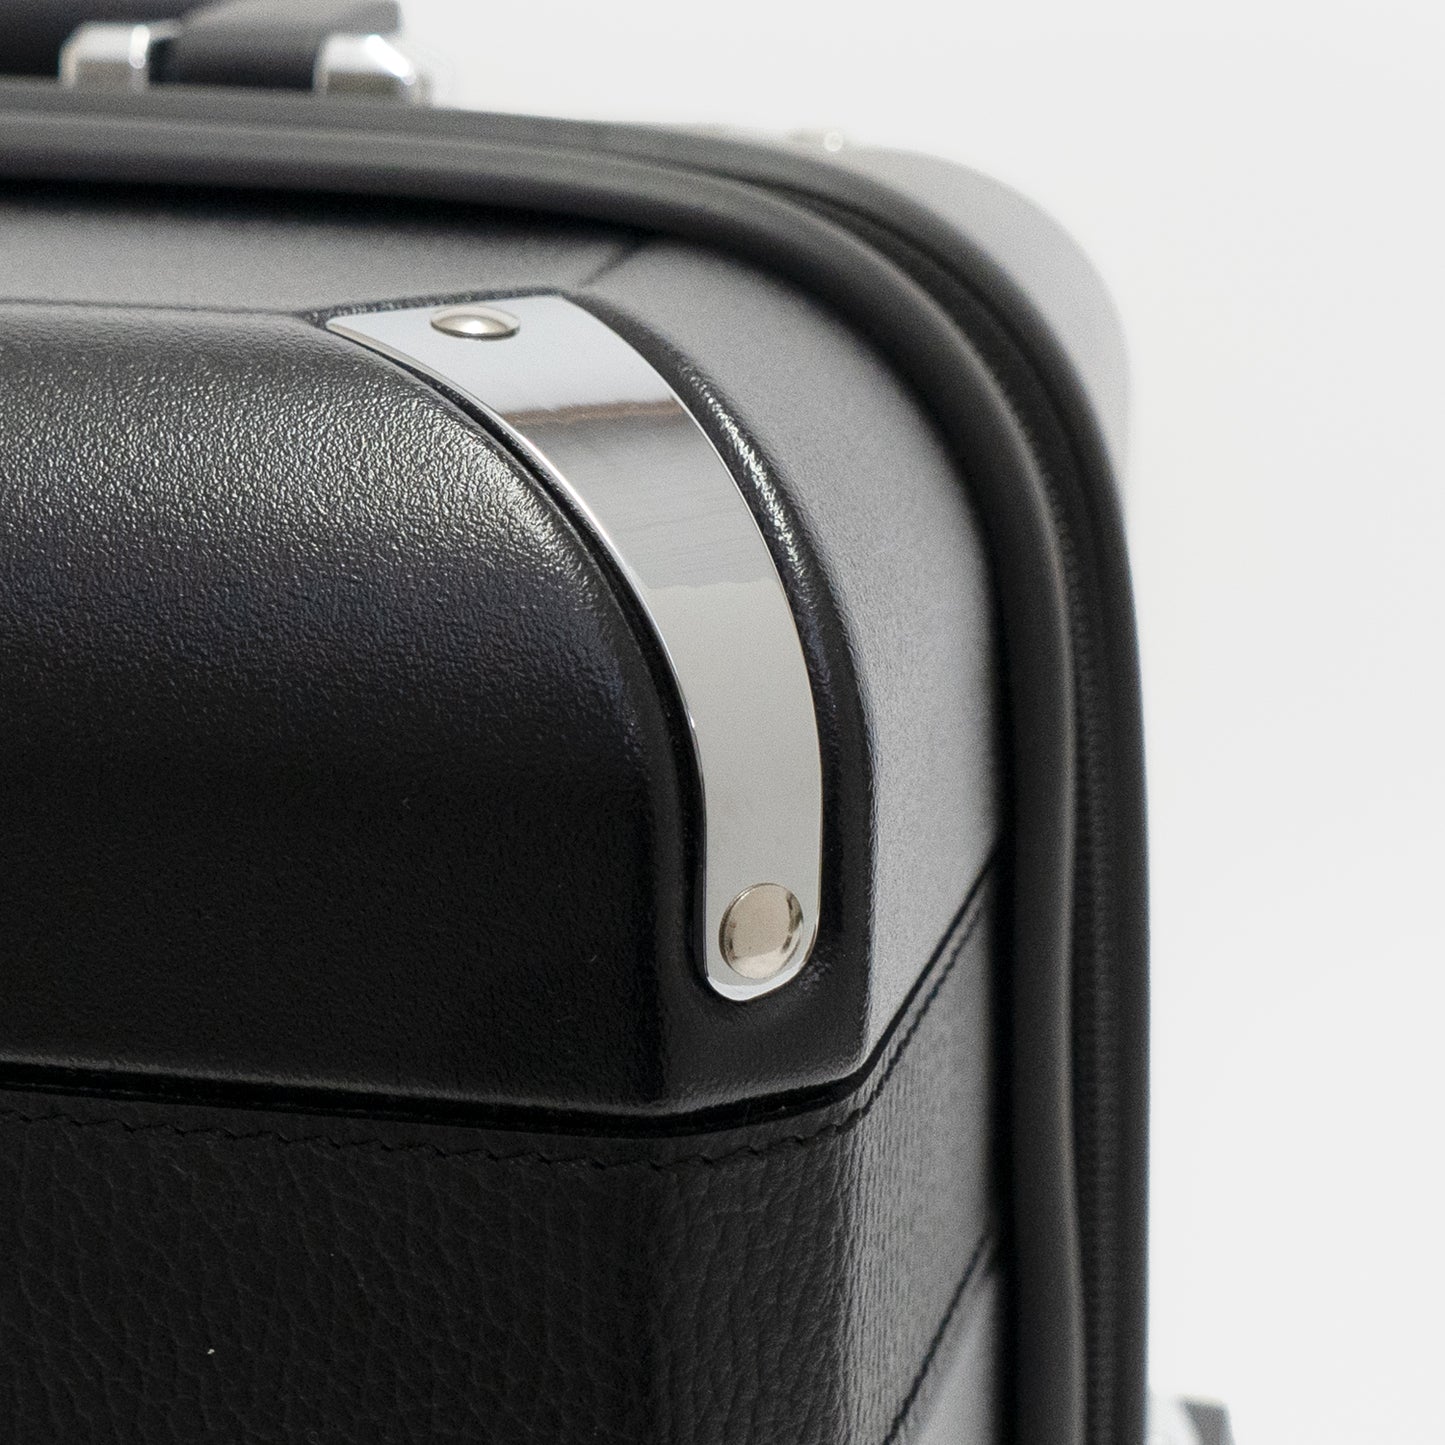 Trunkレザーバンドハードスーツケースはコーナー部分にメタルパーツを採用。メタル部分のソリッド感と、レザーの温もりのコントラストが特徴的なデザインです。